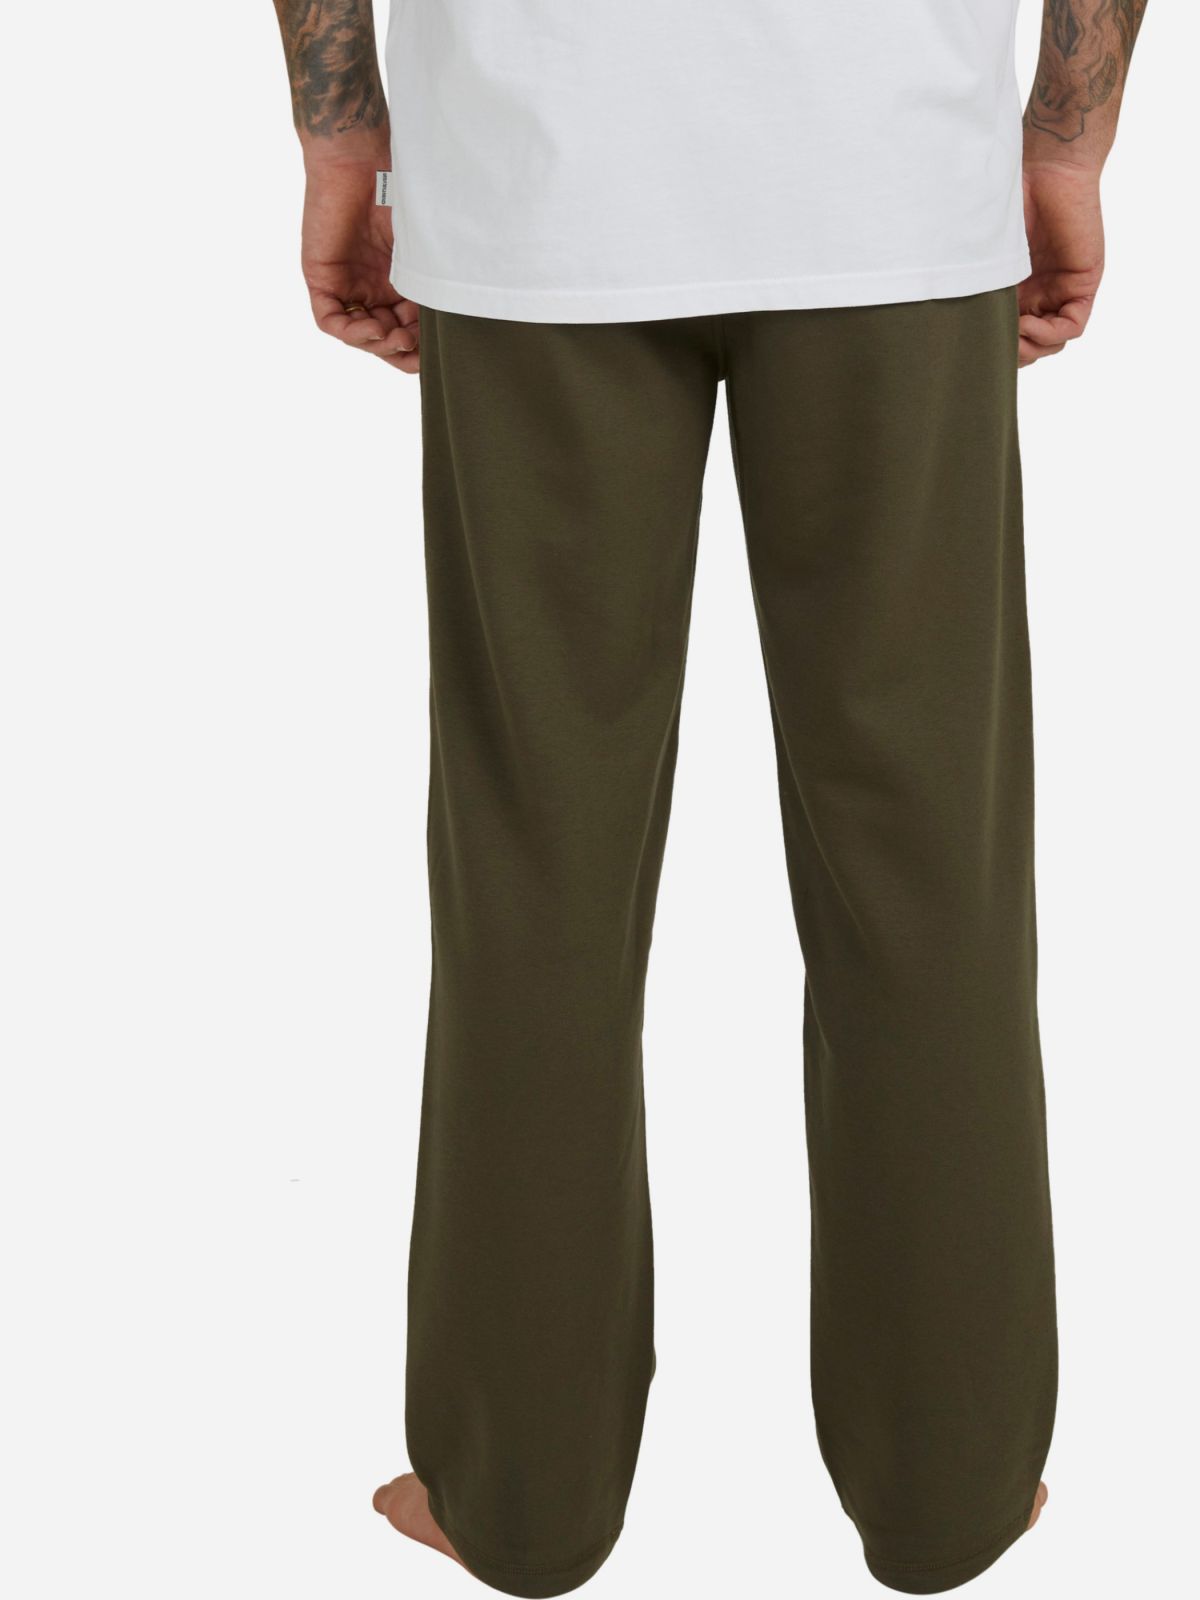  מכנסי טרנינג ארוכים עם לוגו של QUIKSILVER